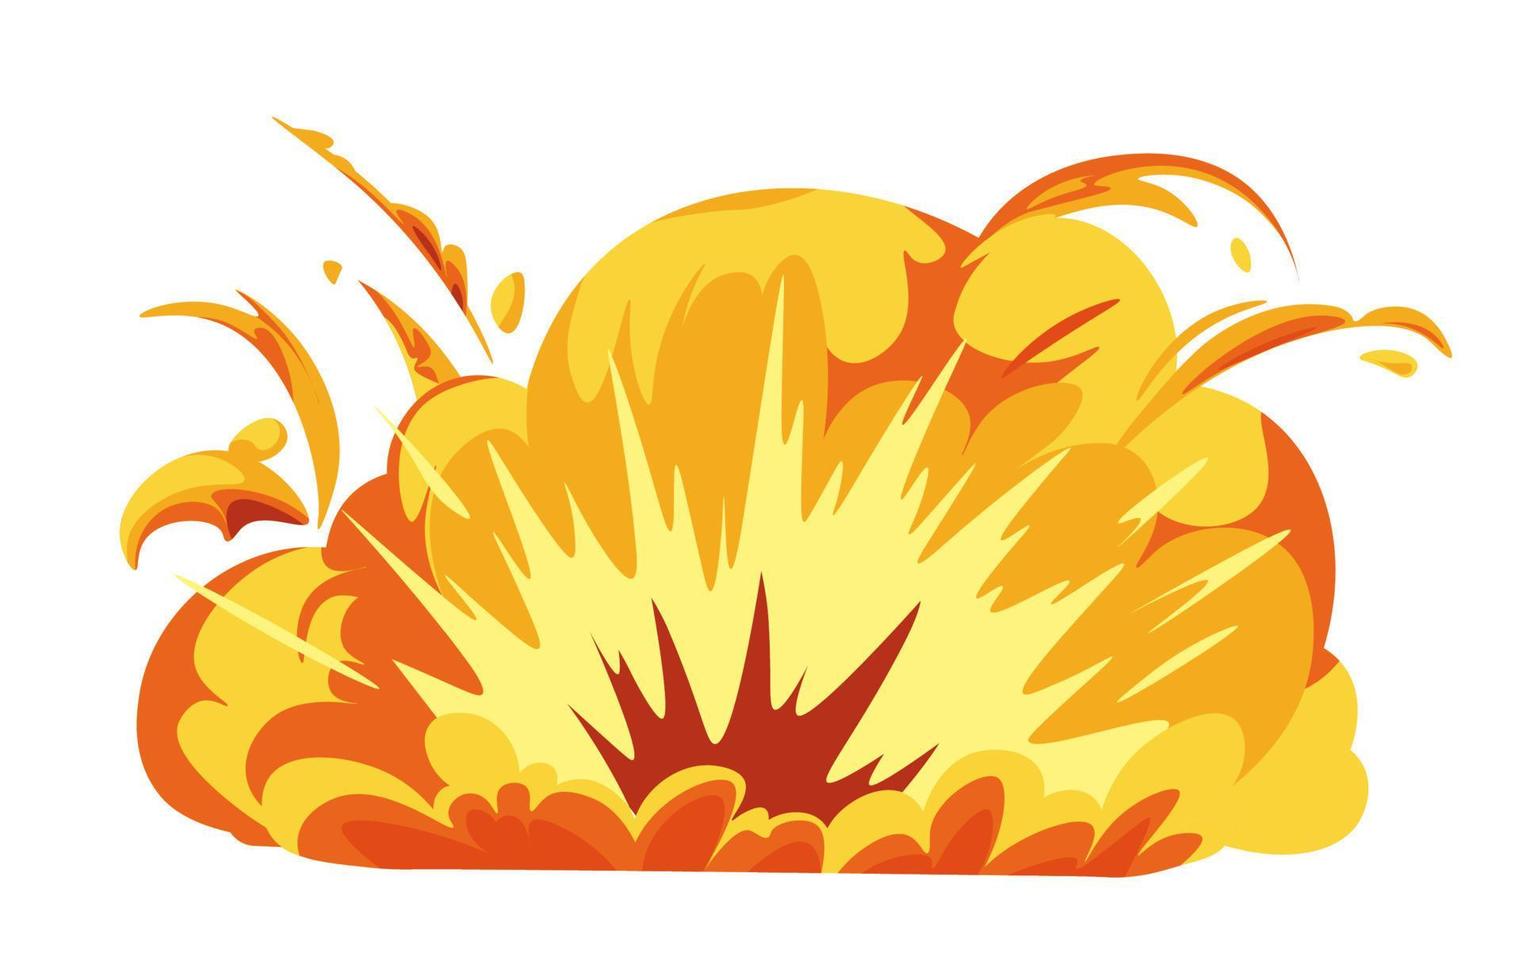 explosioner och brista av lågor, brand och bläs vektor